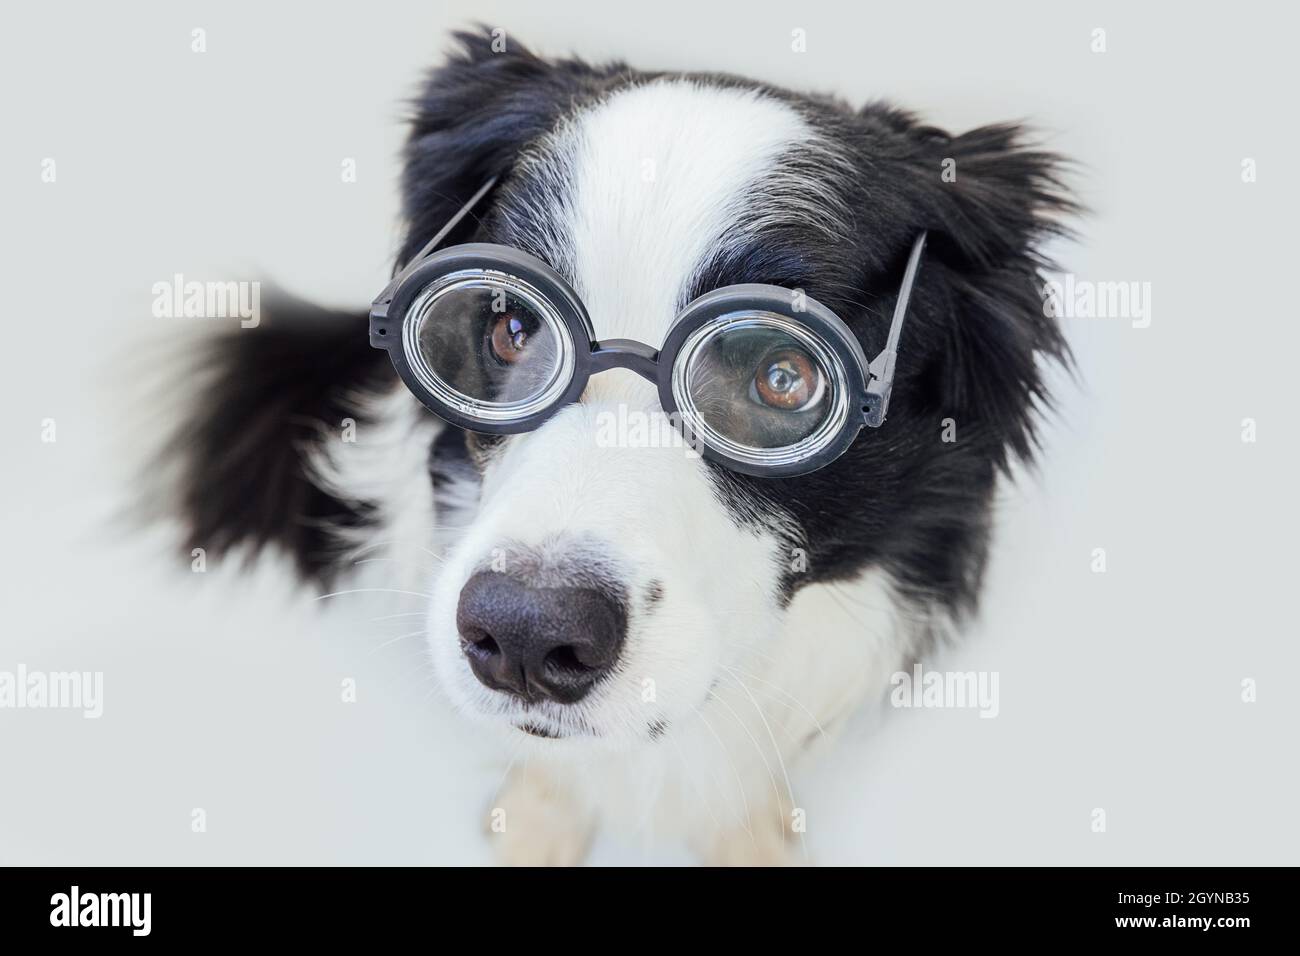 Lustige Porträt von Welpen Hund Grenze Collie in komischen Brillen isoliert auf weißem Hintergrund. Kleiner Hund, der in einer Brille starrt wie ein Professor Stockfoto